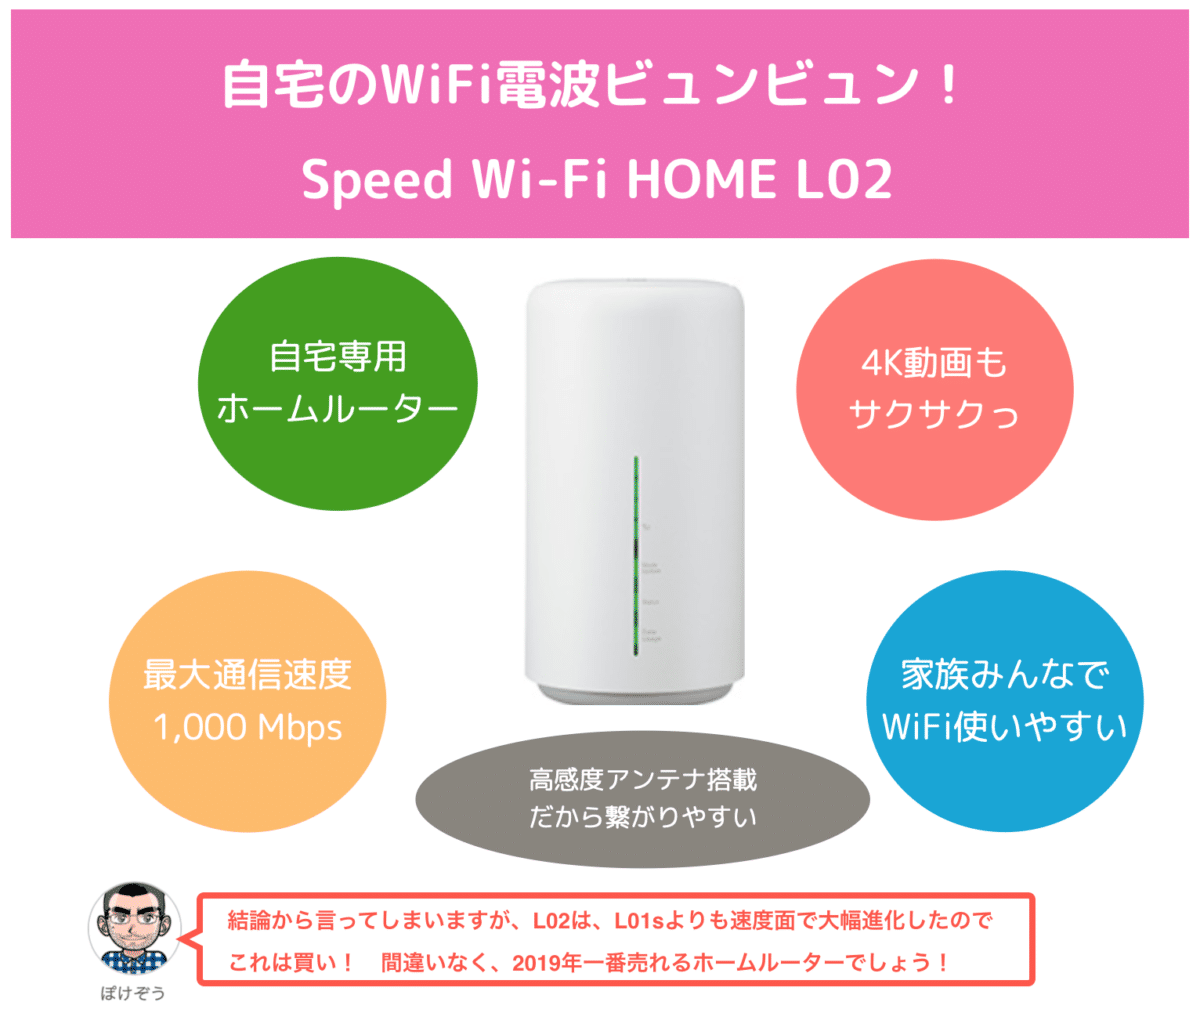 【比較レビュー】Speed Wi-Fi HOME L02は買い？L01sからどれだけ進化した？